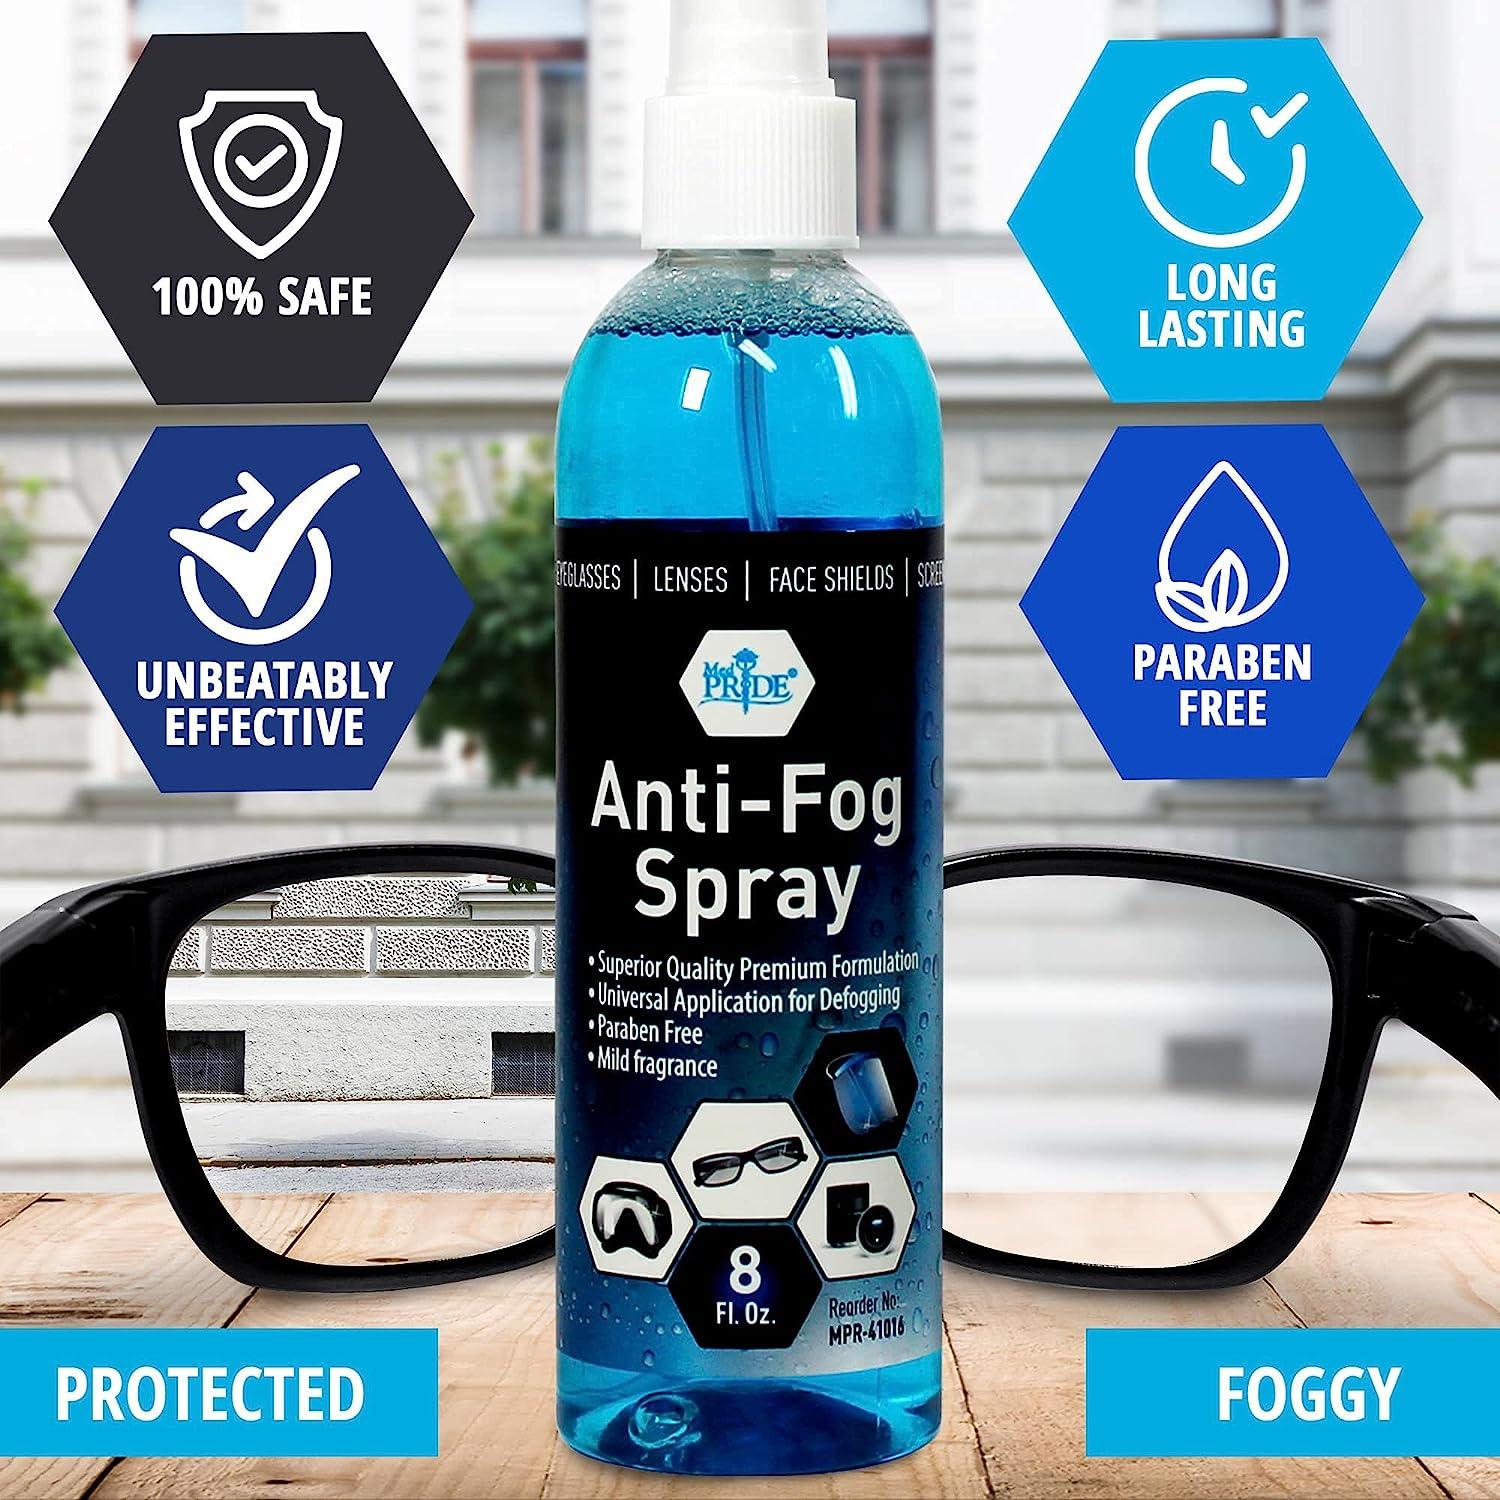 Medpride Premium Anti Fog Spray For Glasses By Long-Lasting Defogger  Prevents Fogging Of Eyeglasses, Safety Glasses, Goggles, Masks, Lenses,  Face Shields & More- Universal, Paraben Free Antifog Spray